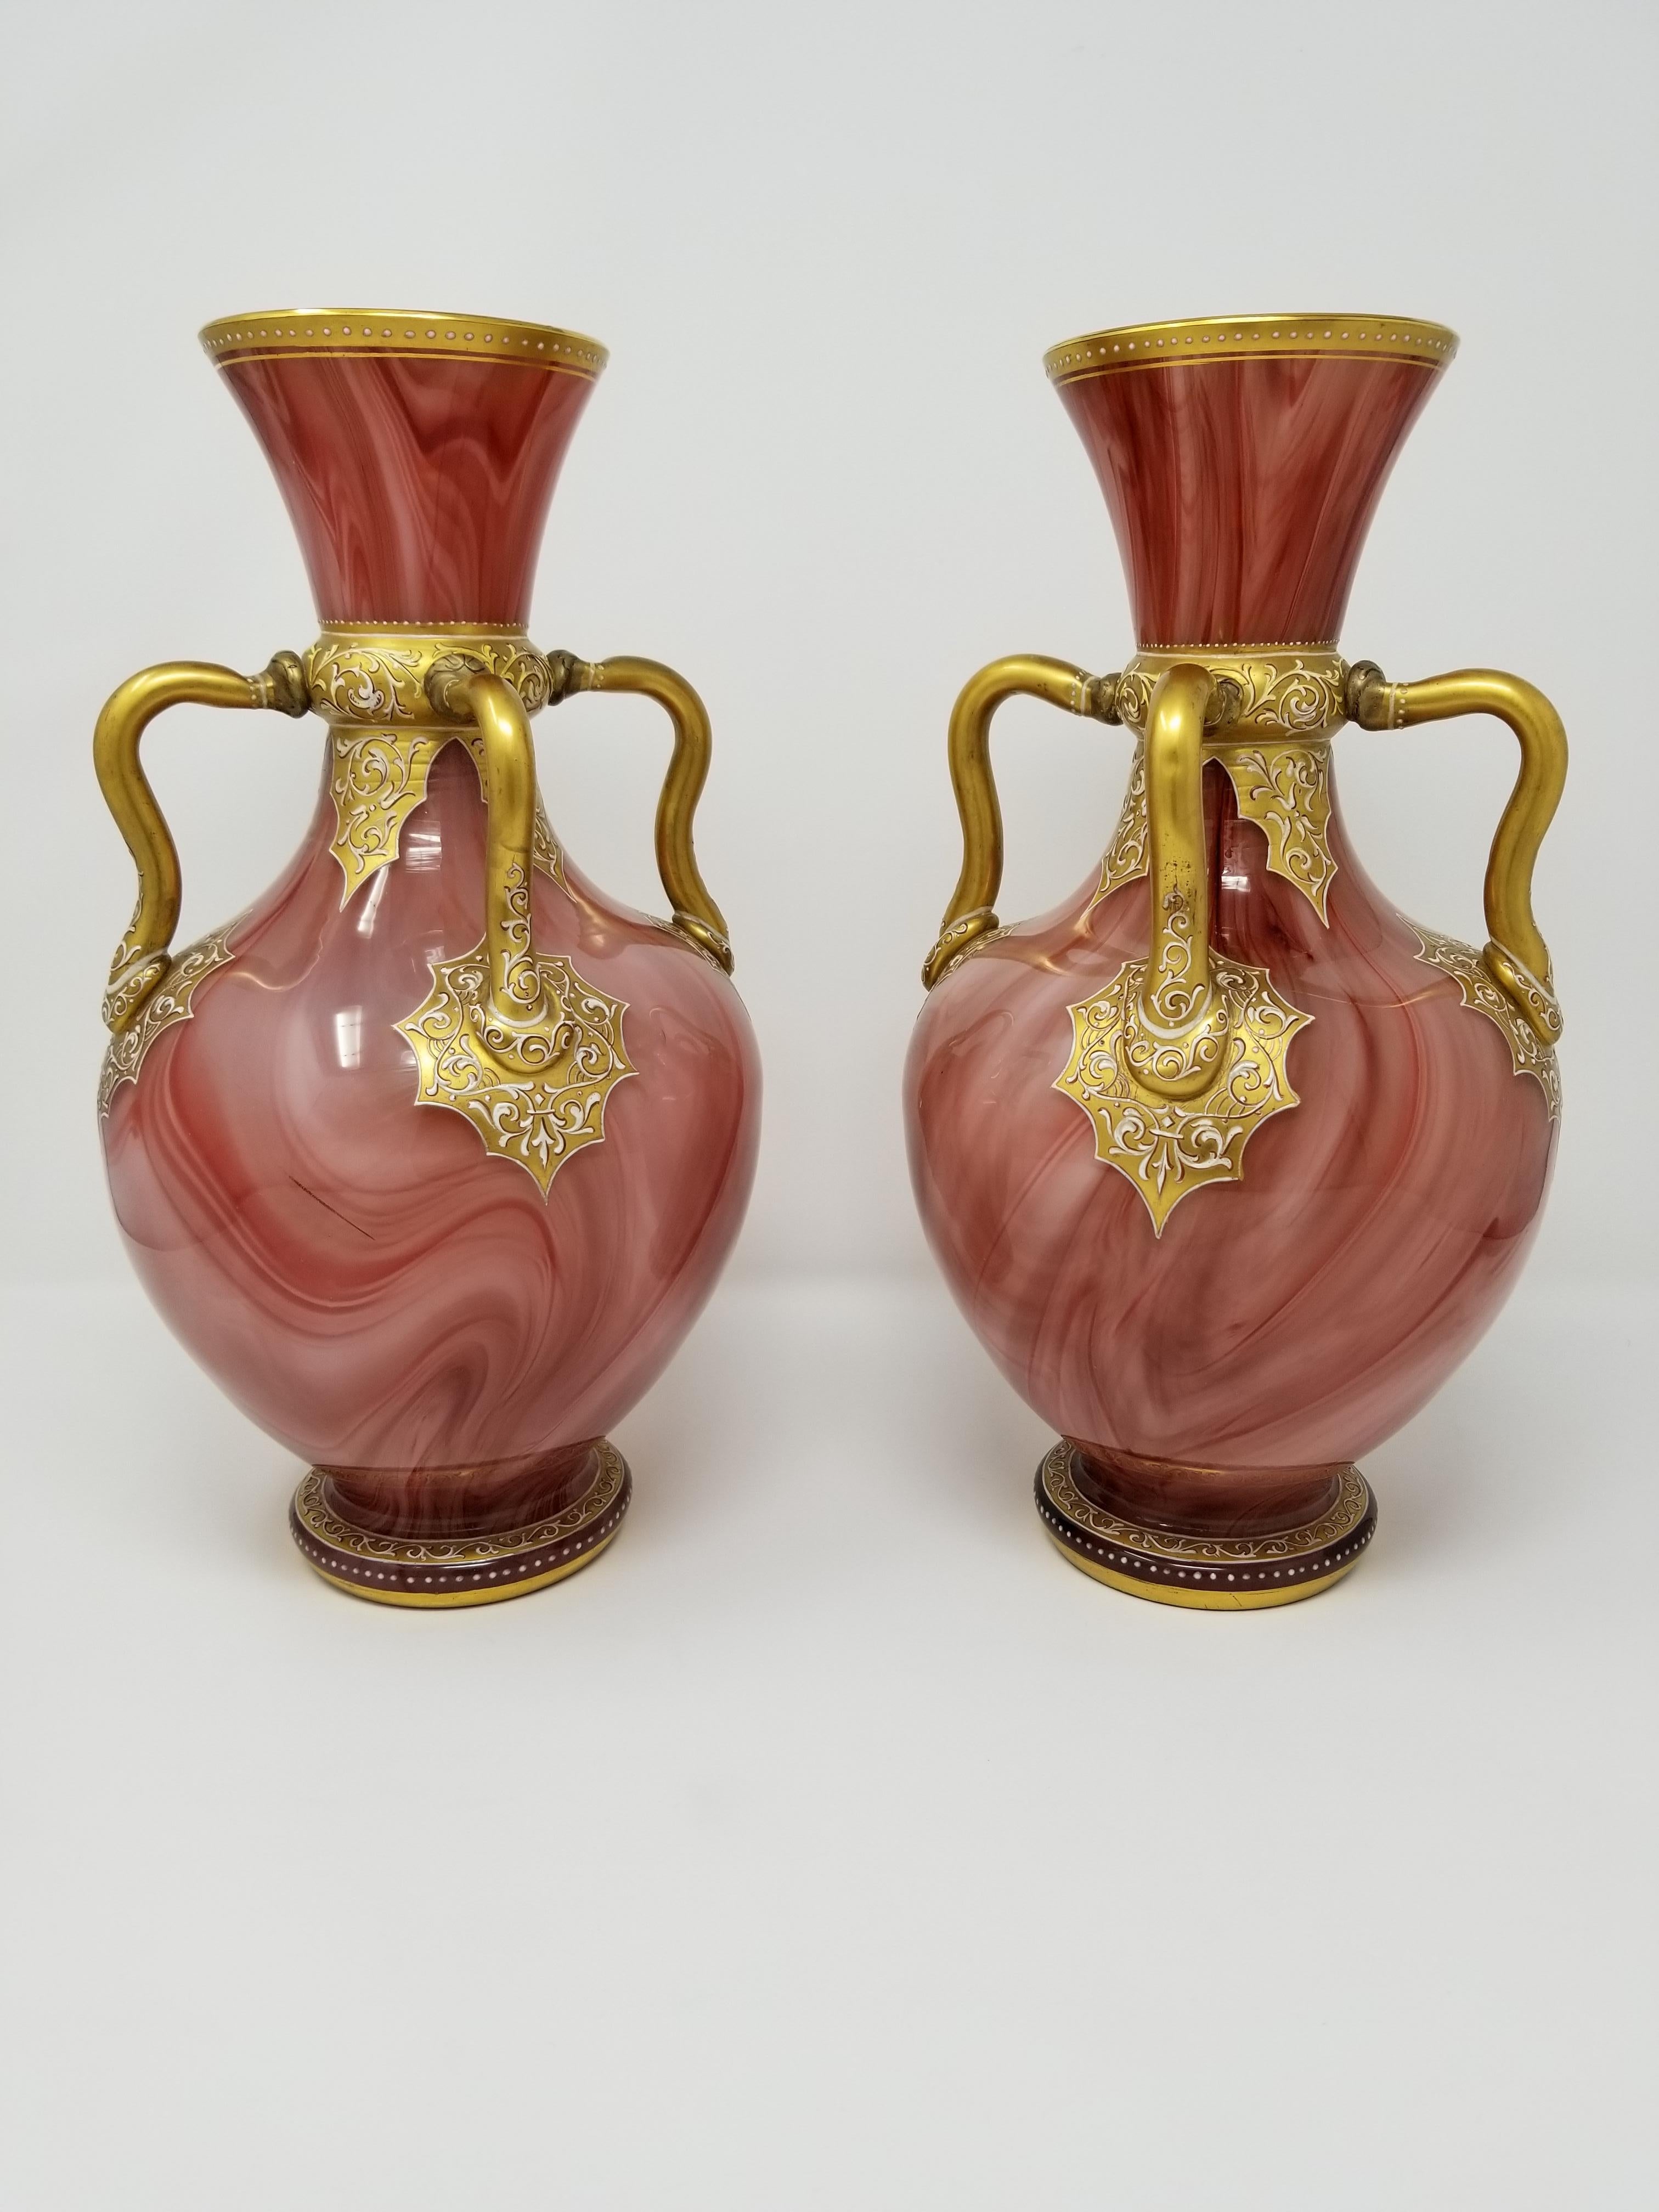 Ein feines Paar antiker orientalistischer Moser-Vasen aus emailliertem, marmoriertem Glas im orientalistischen Stil. Mit einer ungewöhnlichen rosa/ziegelfarbenen Farbe und vier handapplizierten Glasgriffen. Jedes ist im orientalischen Design mit